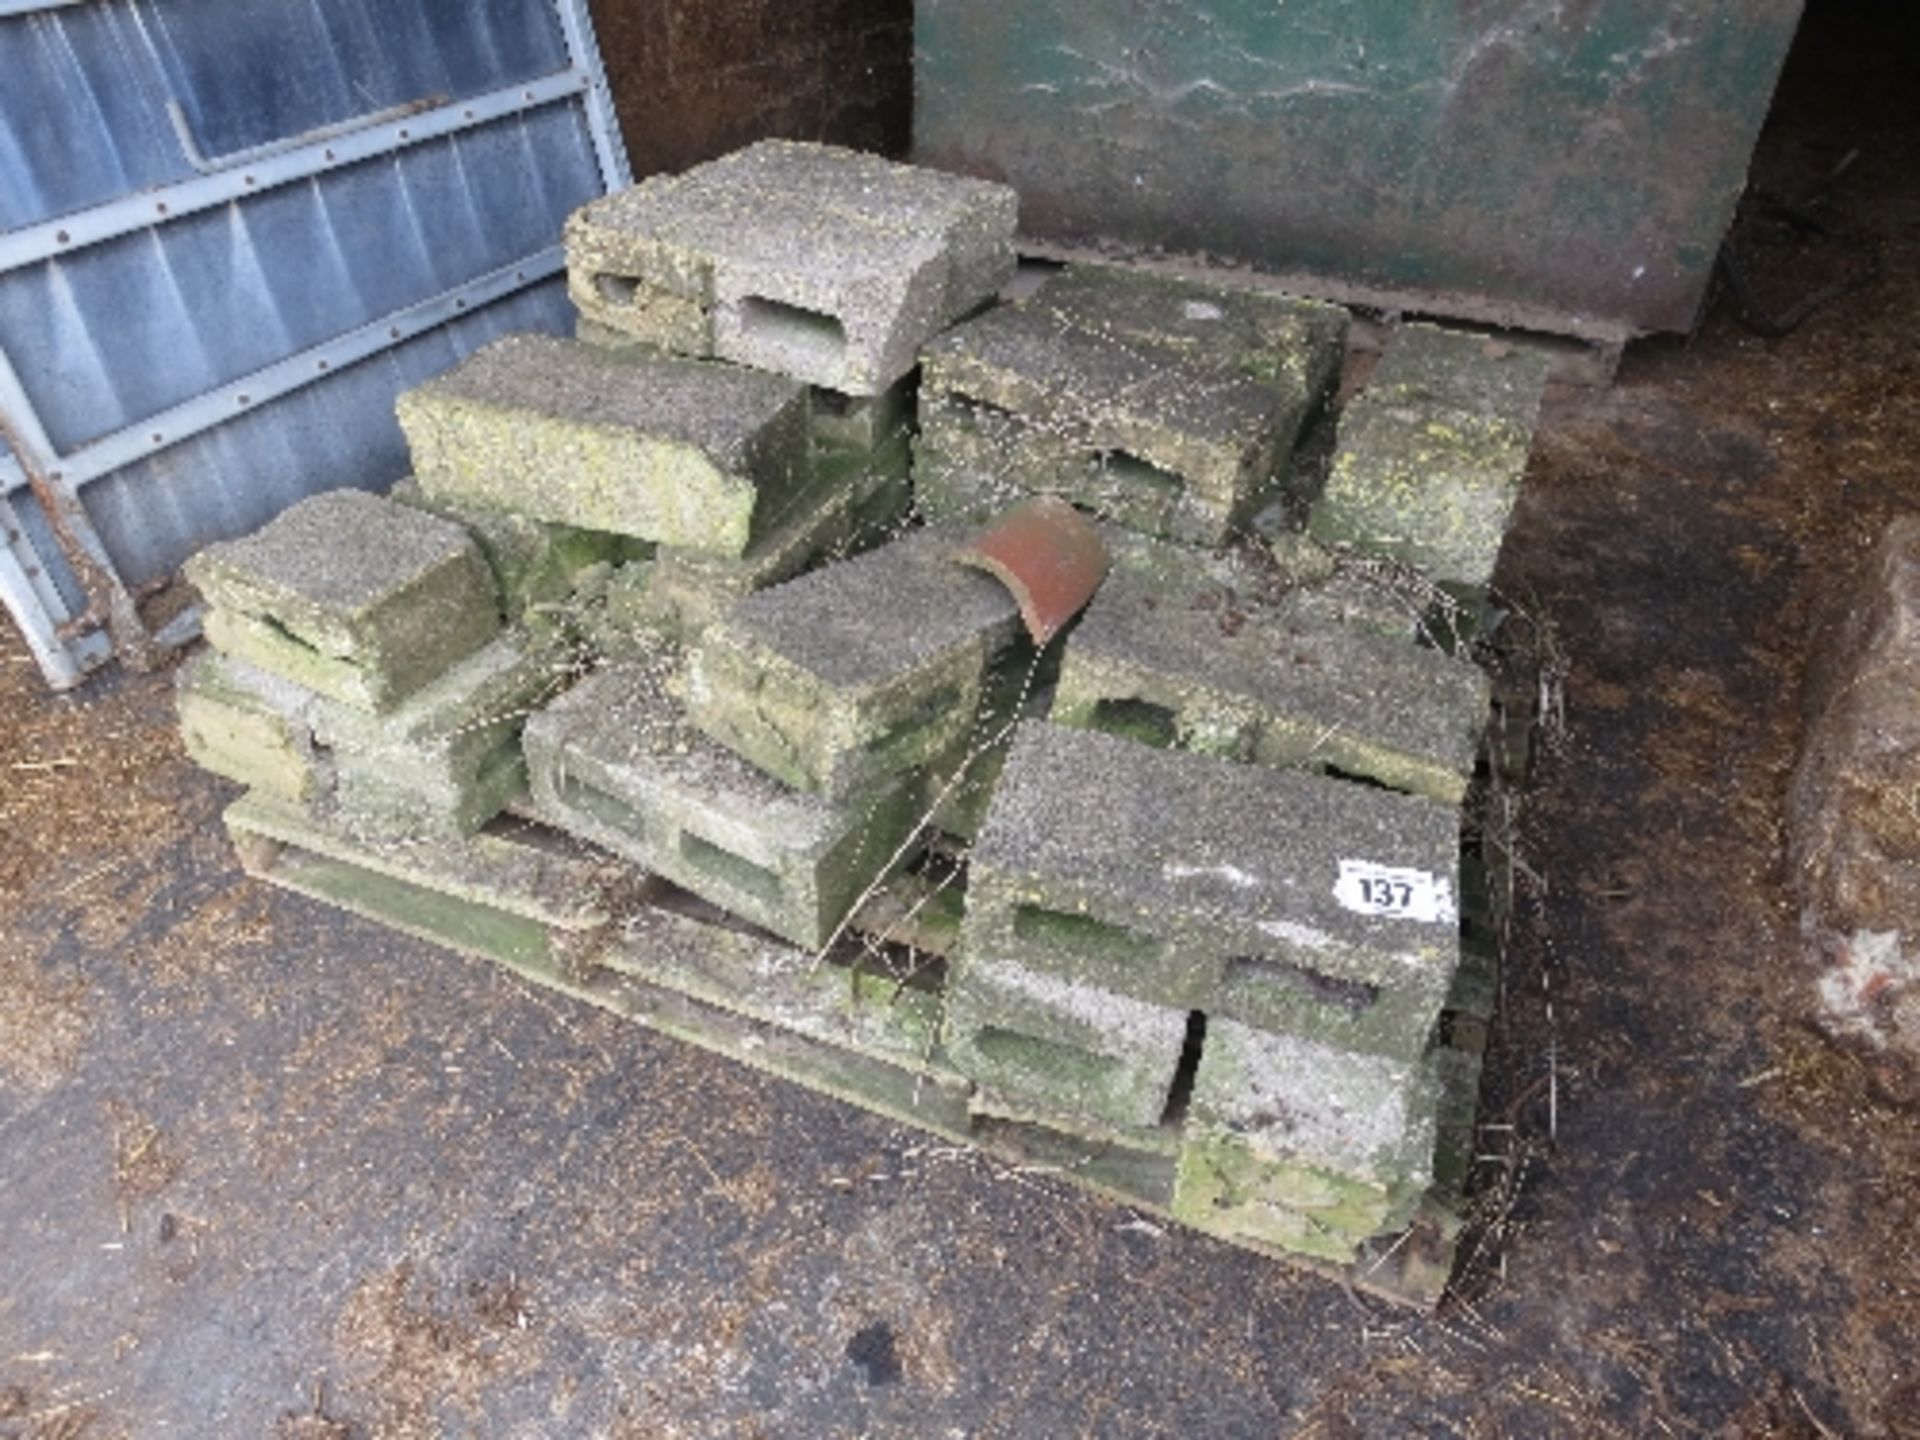 Quantity of concrete blocks